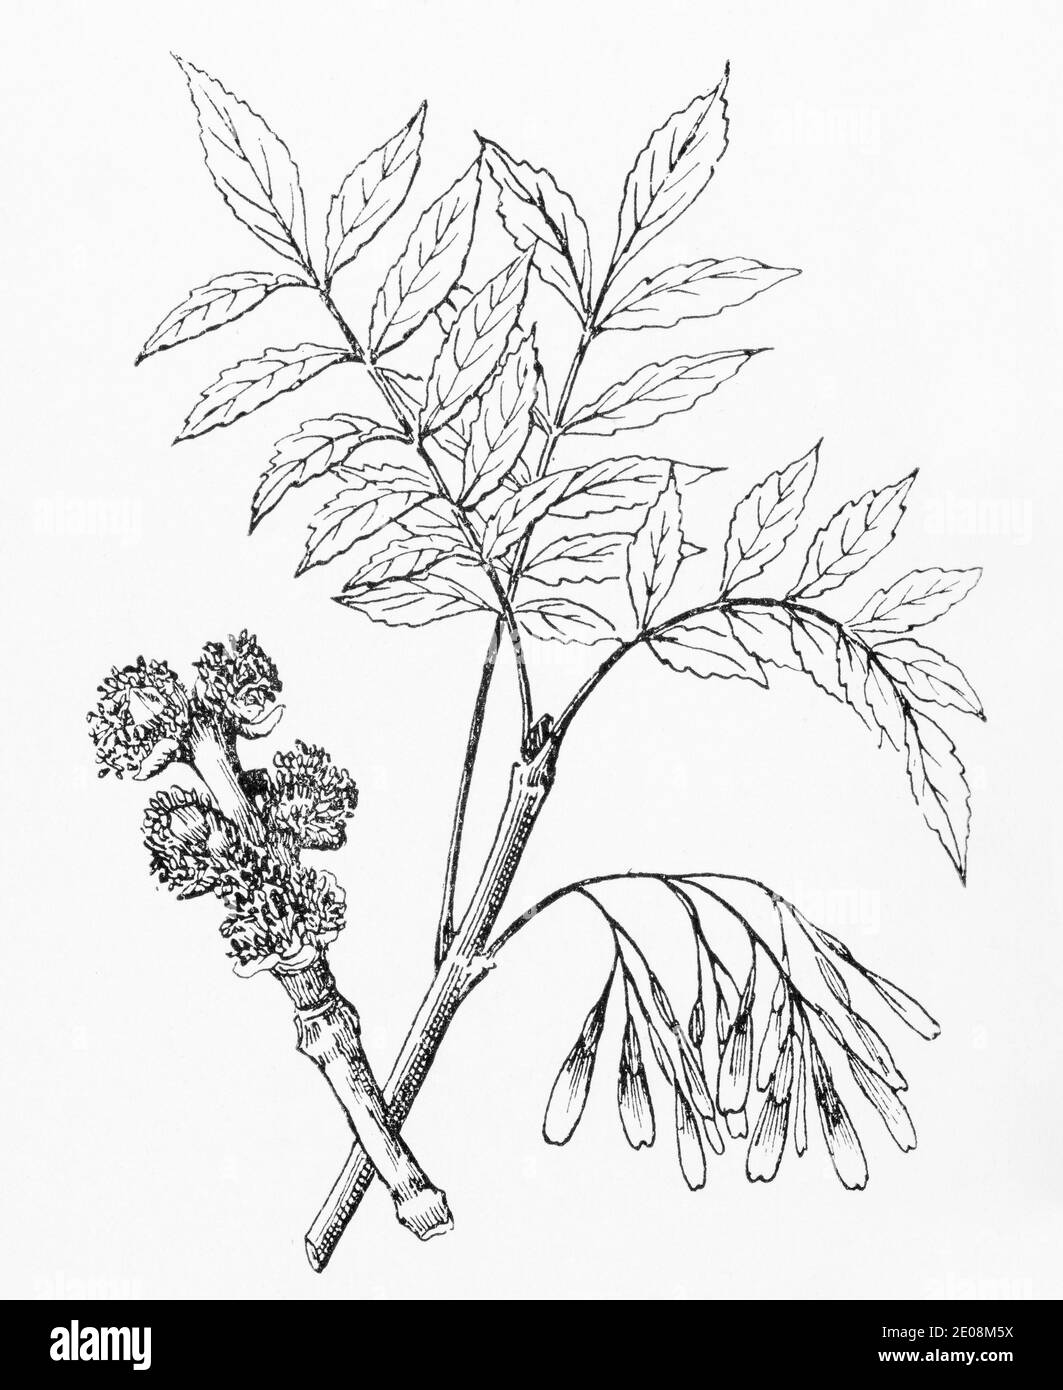 Ancienne gravure d'illustration botanique du frêne / Fraxinus excelsior. Plante médicinale traditionnelle. Voir Remarques Banque D'Images